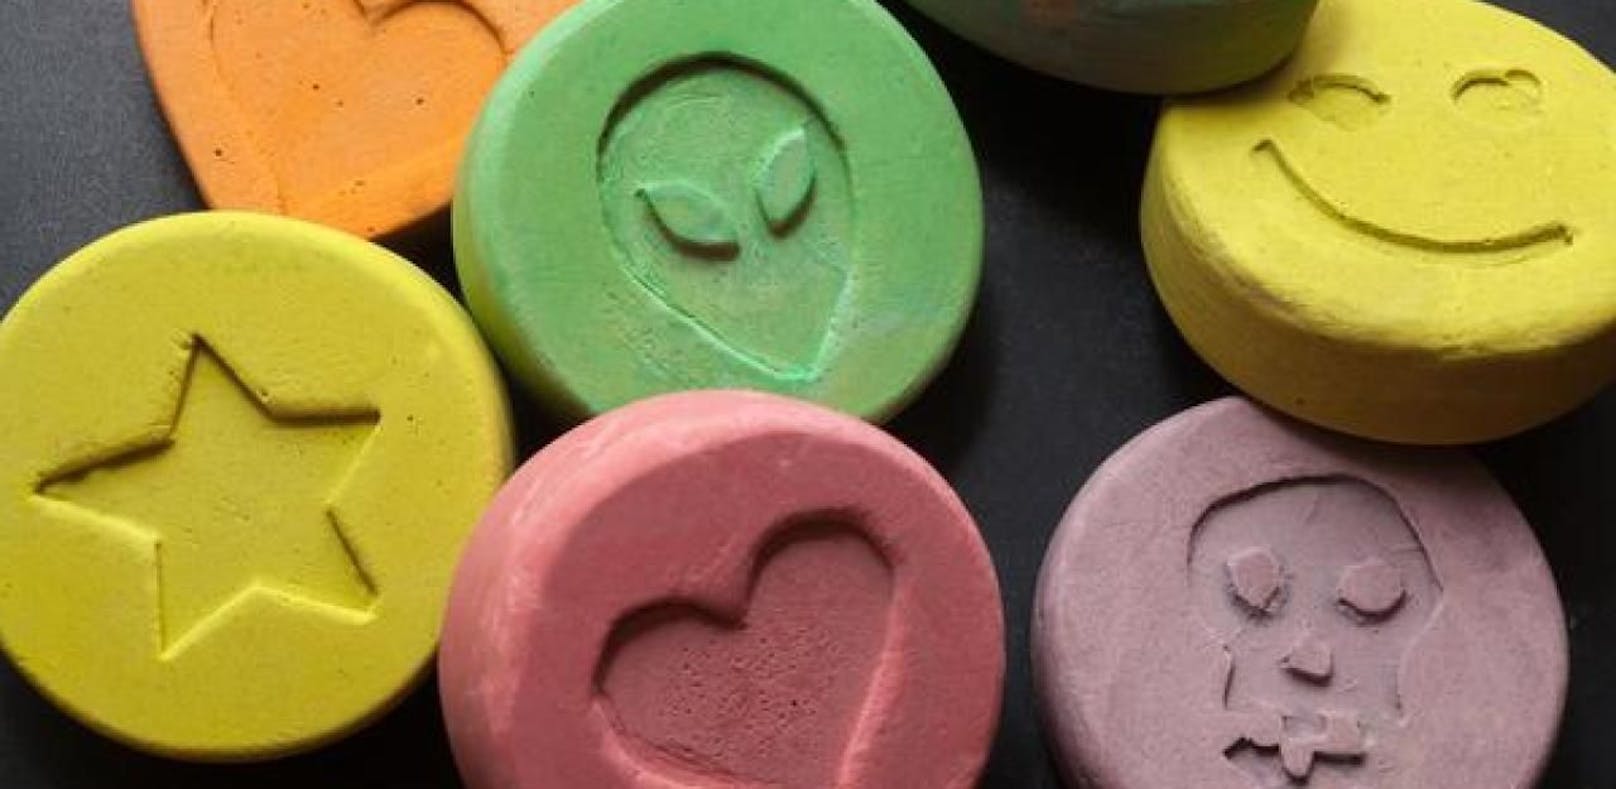 Die 15-Jährige soll vier bis fünf Ecstasy-Tabletten geschluckt haben.